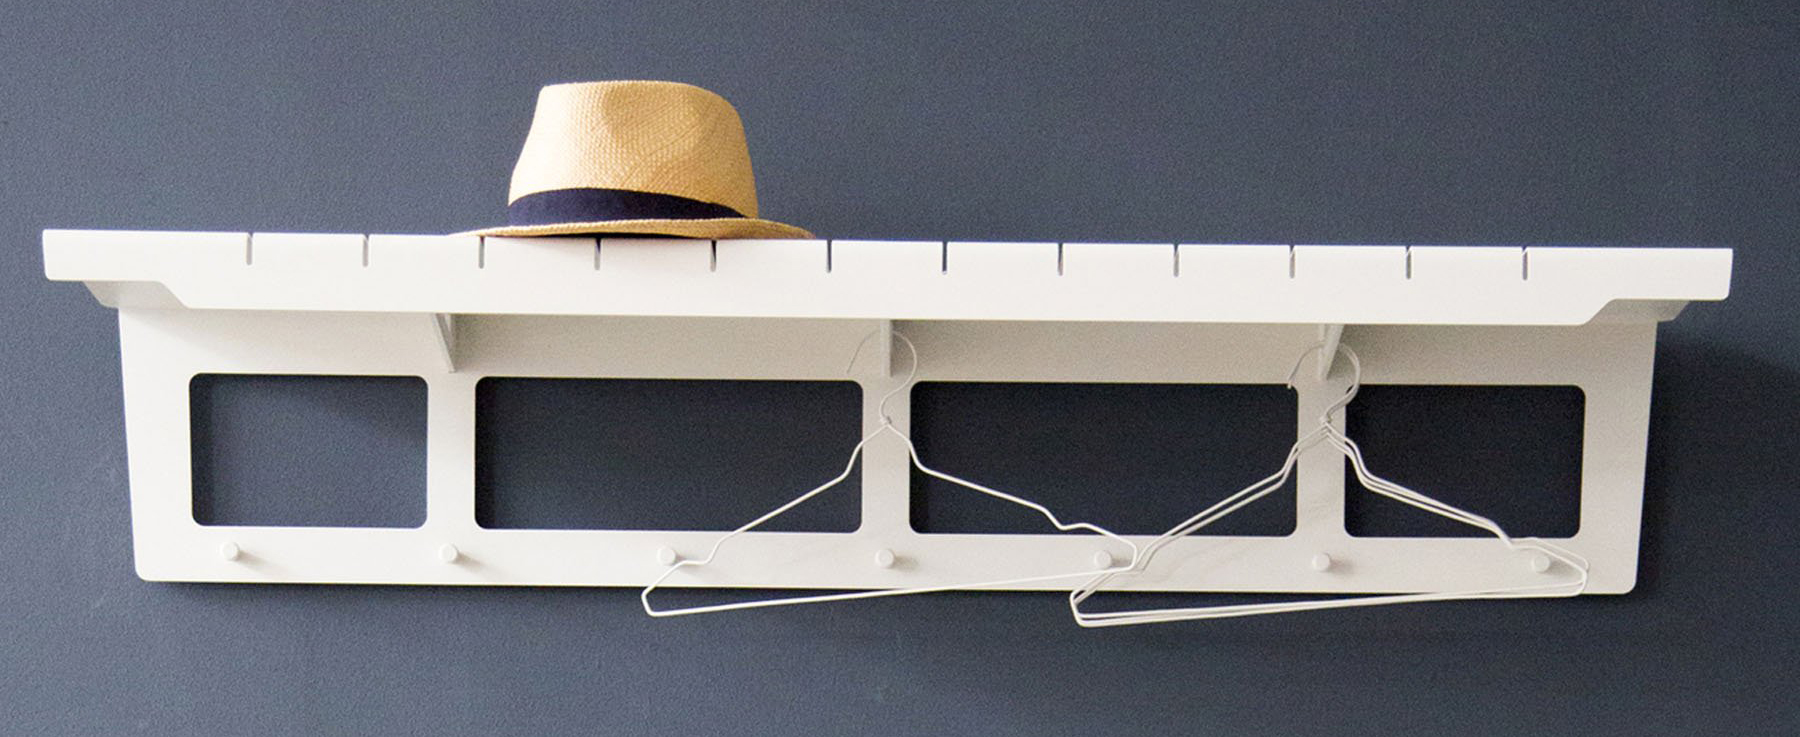 cane-line copenhagen coat rack